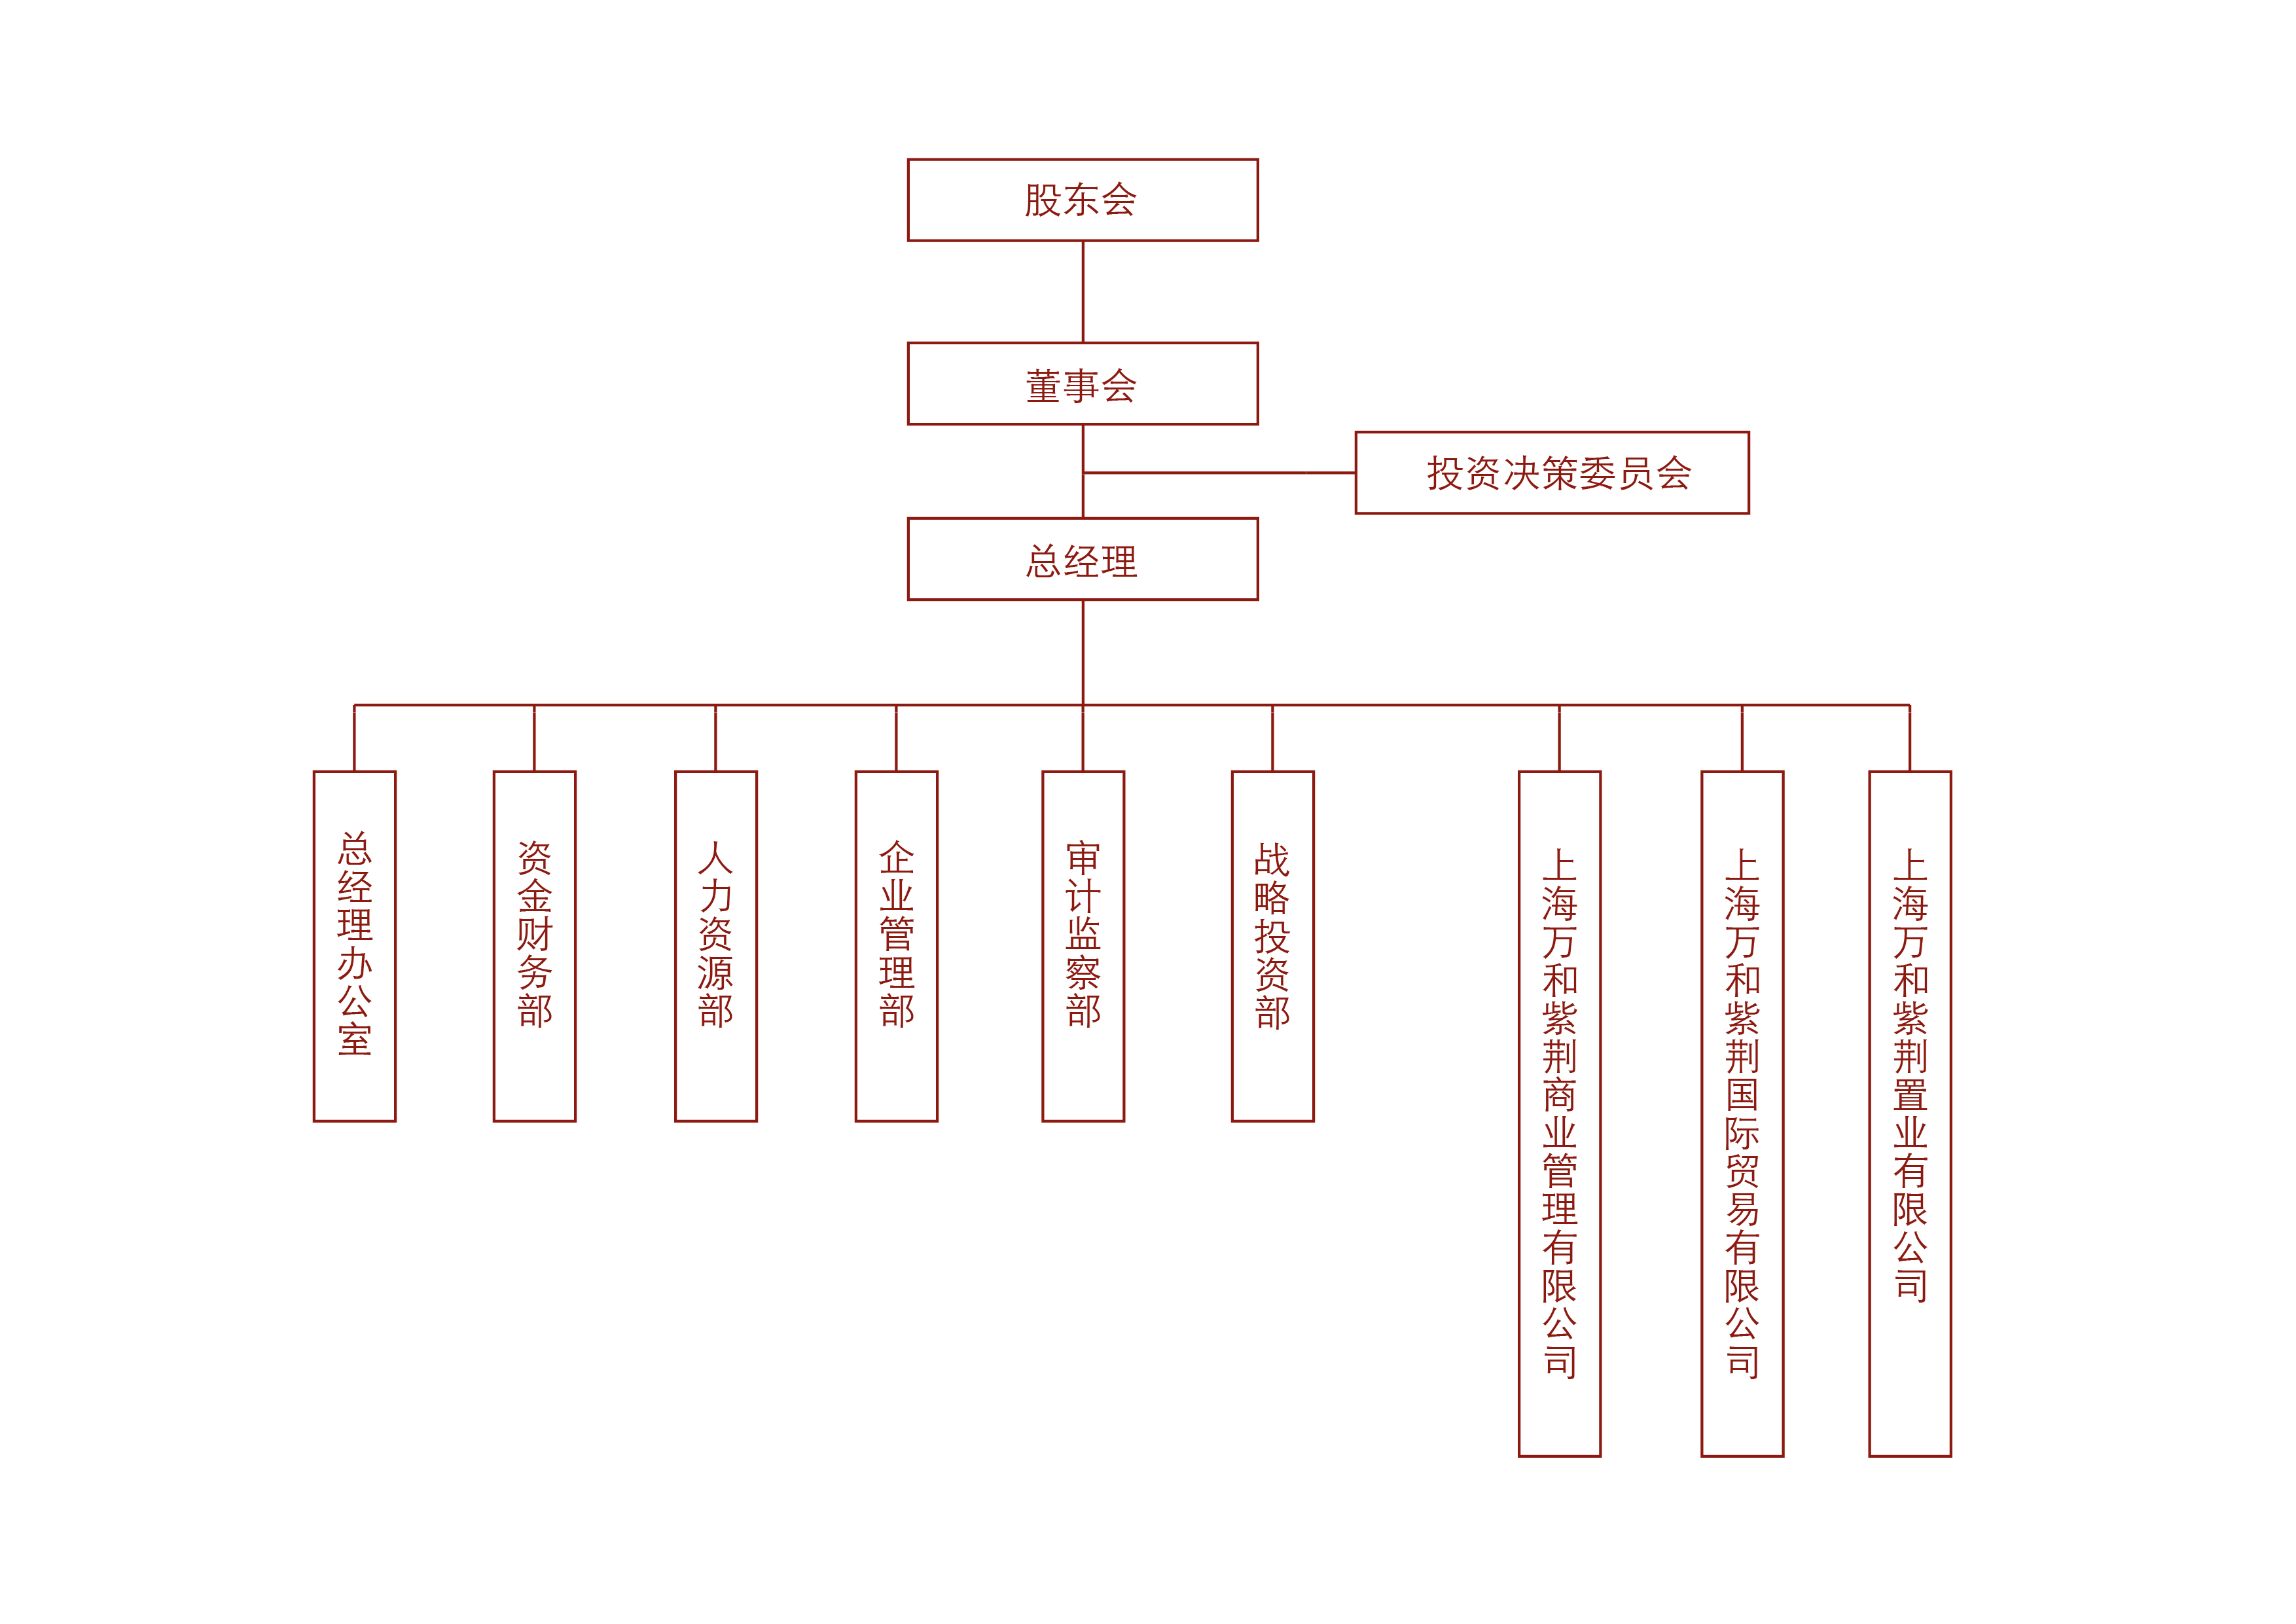 上海萬和紫荊實業公司組織架構圖_畫板1